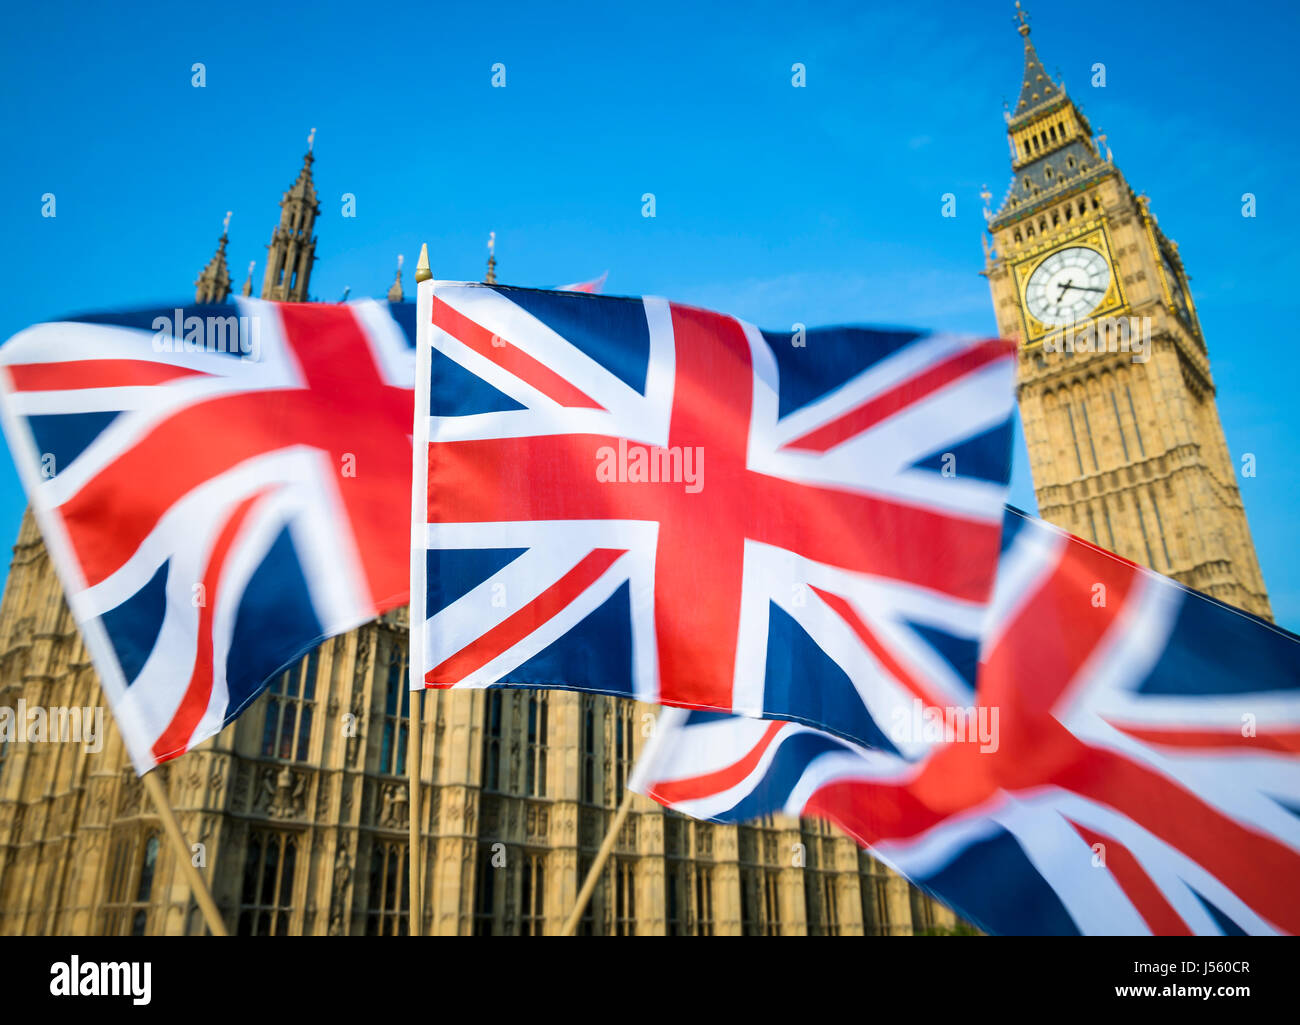 Grande britannica Union Jack flag sflying in motion blur nella parte anteriore del Big Ben e le Camere del Parlamento presso il Palazzo di Westminster, Londra, Regno Unito Foto Stock